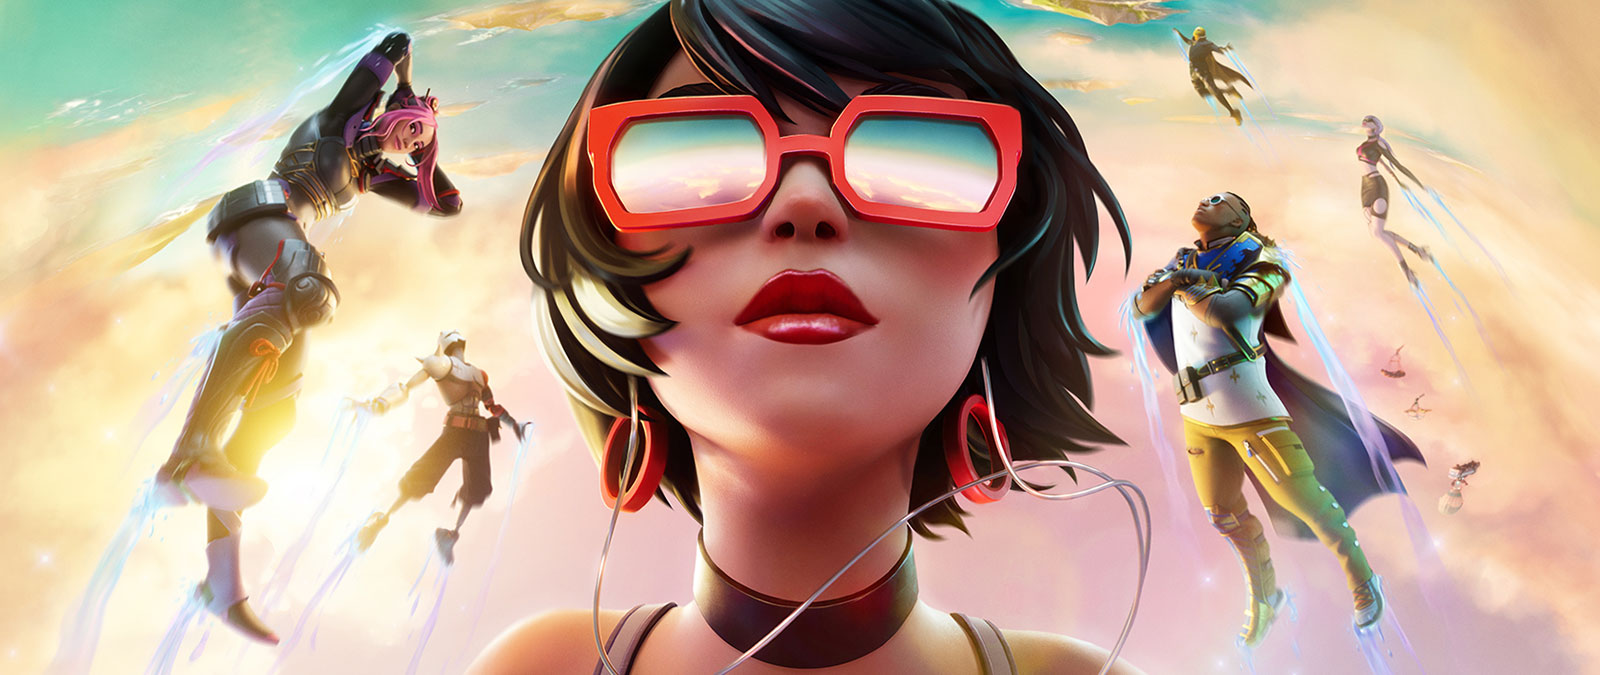 Une fille portant des lunettes de soleil rouges flotte dans les nuages avec d’autres personnages sous un ciel aux couleurs pastel.